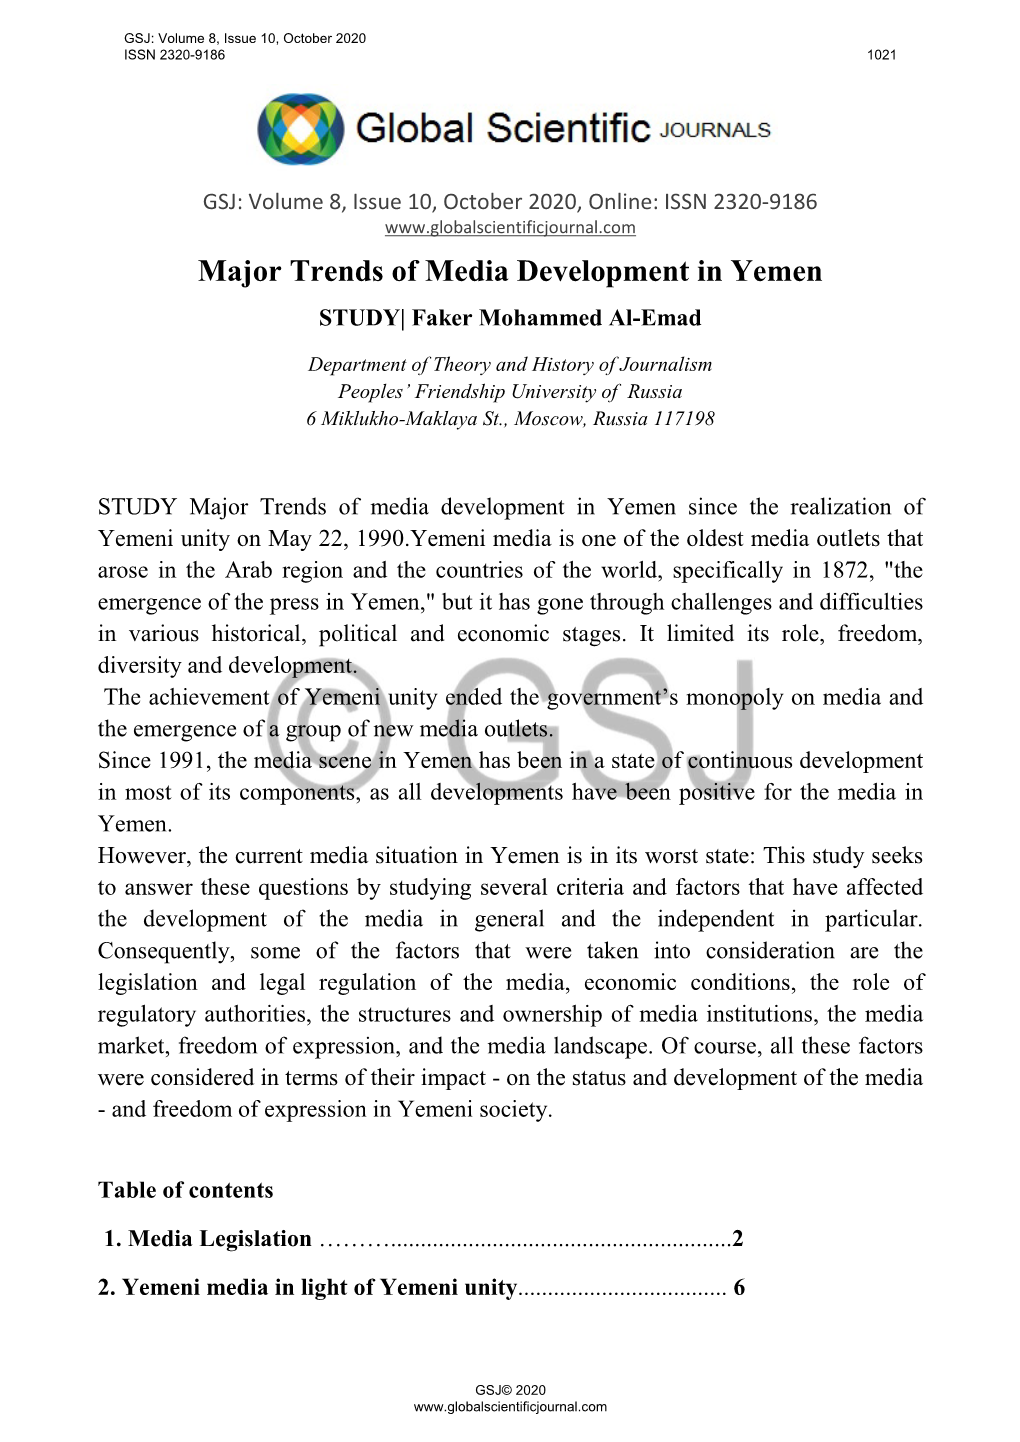 Major Trends of Media Development in Yemen STUDY| Faker Mohammed Al-Emad